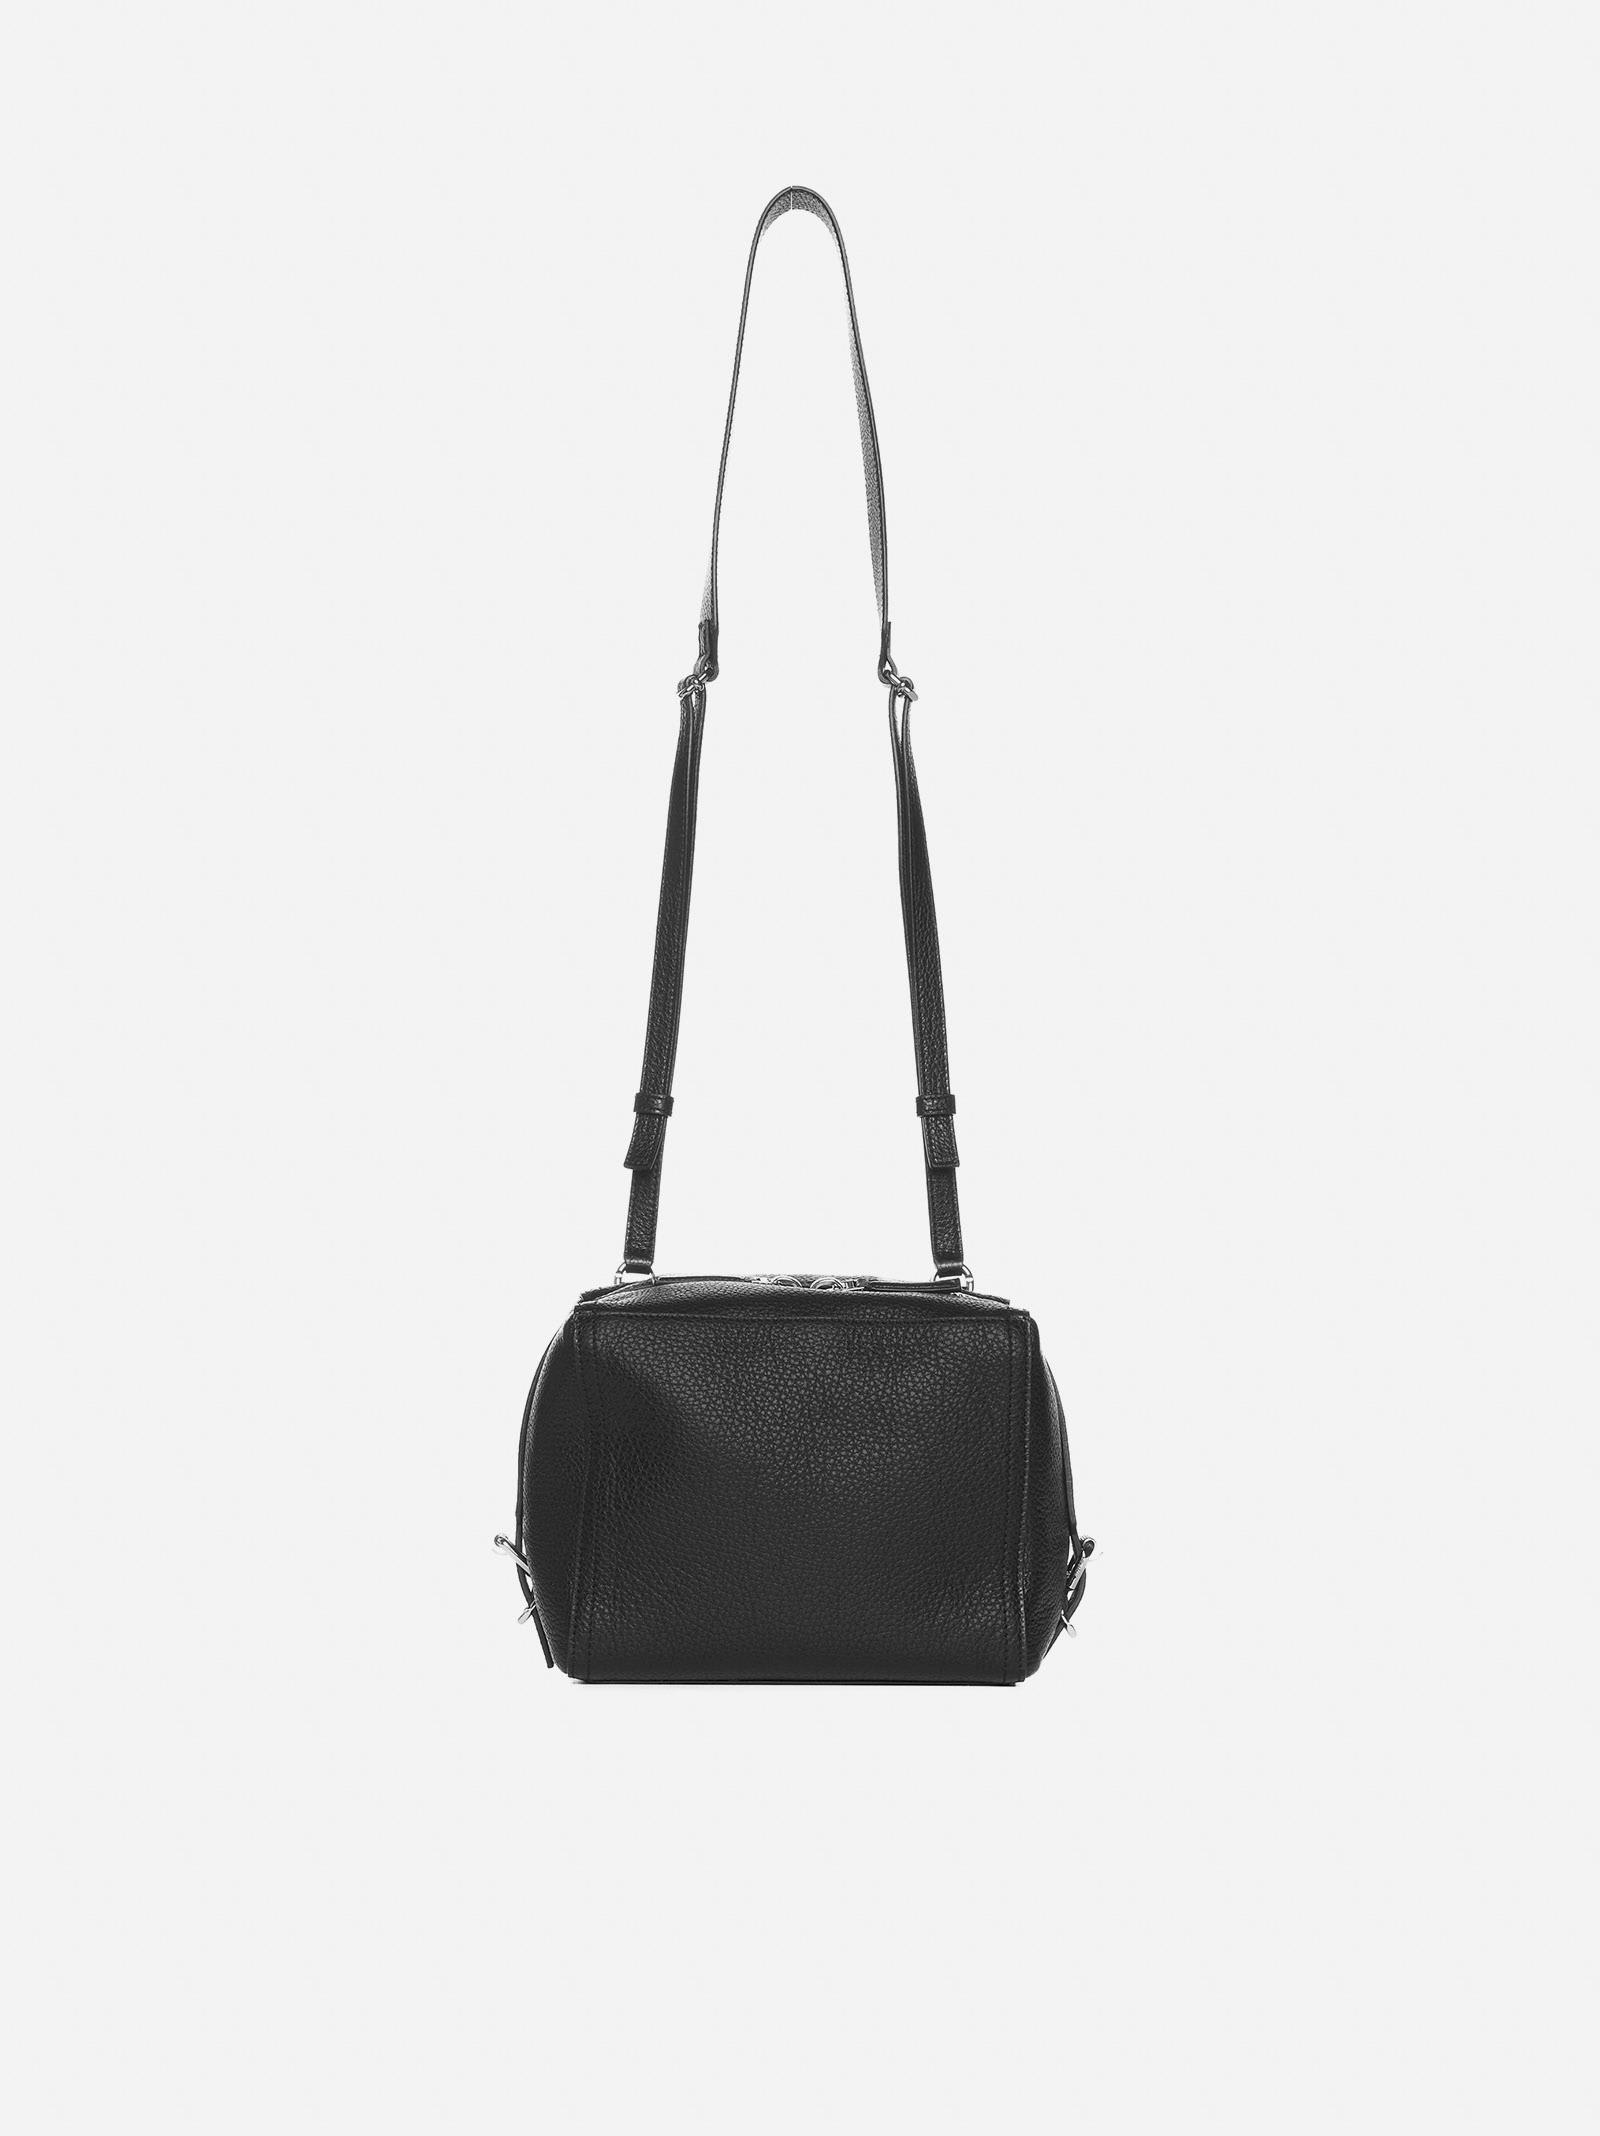 Pandora Leather Small Bag